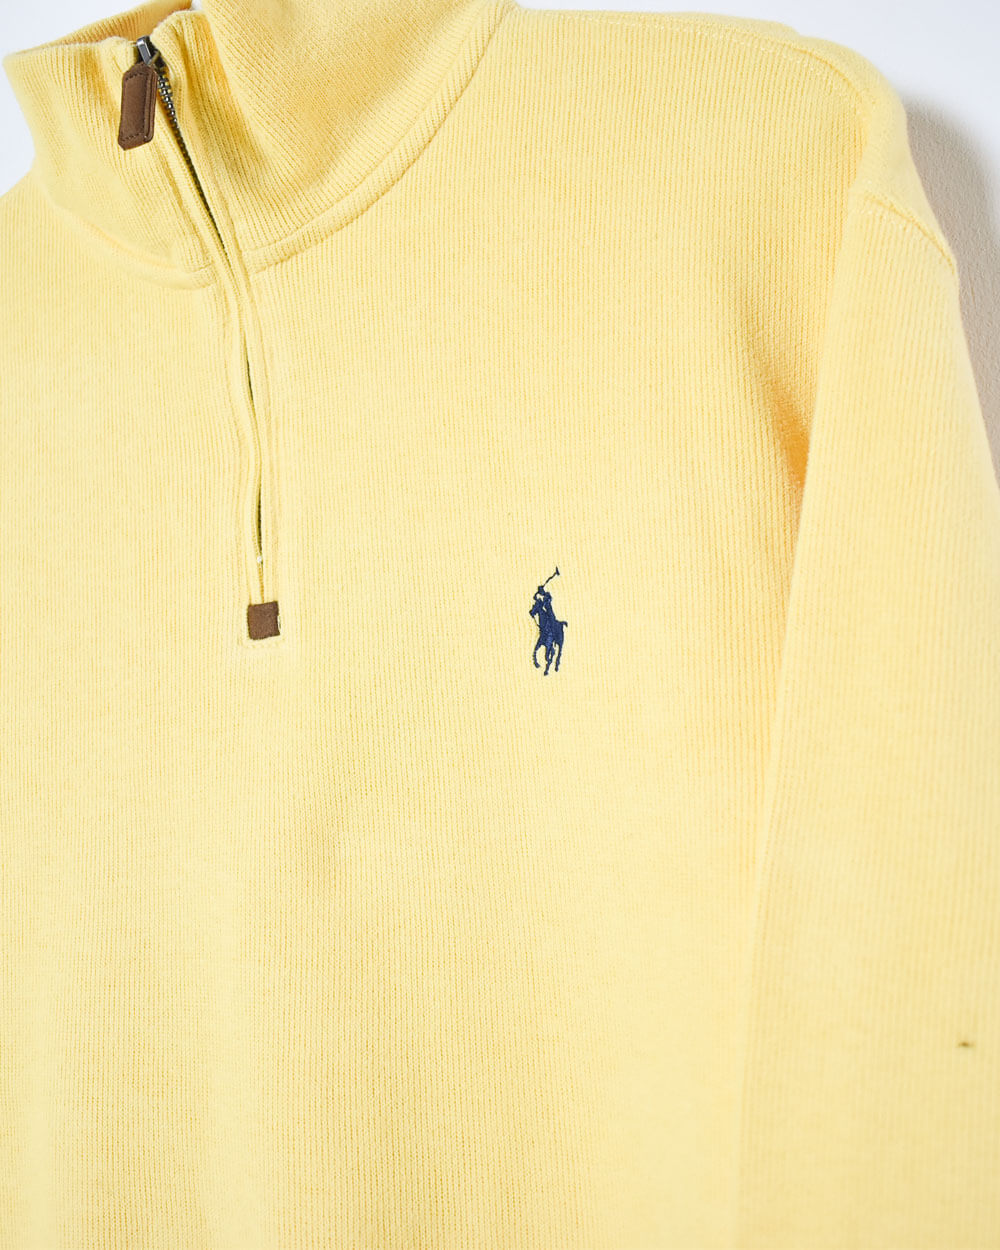 Yellow Ralph Lauren 1/4 Zip Sweatshirt - Medium